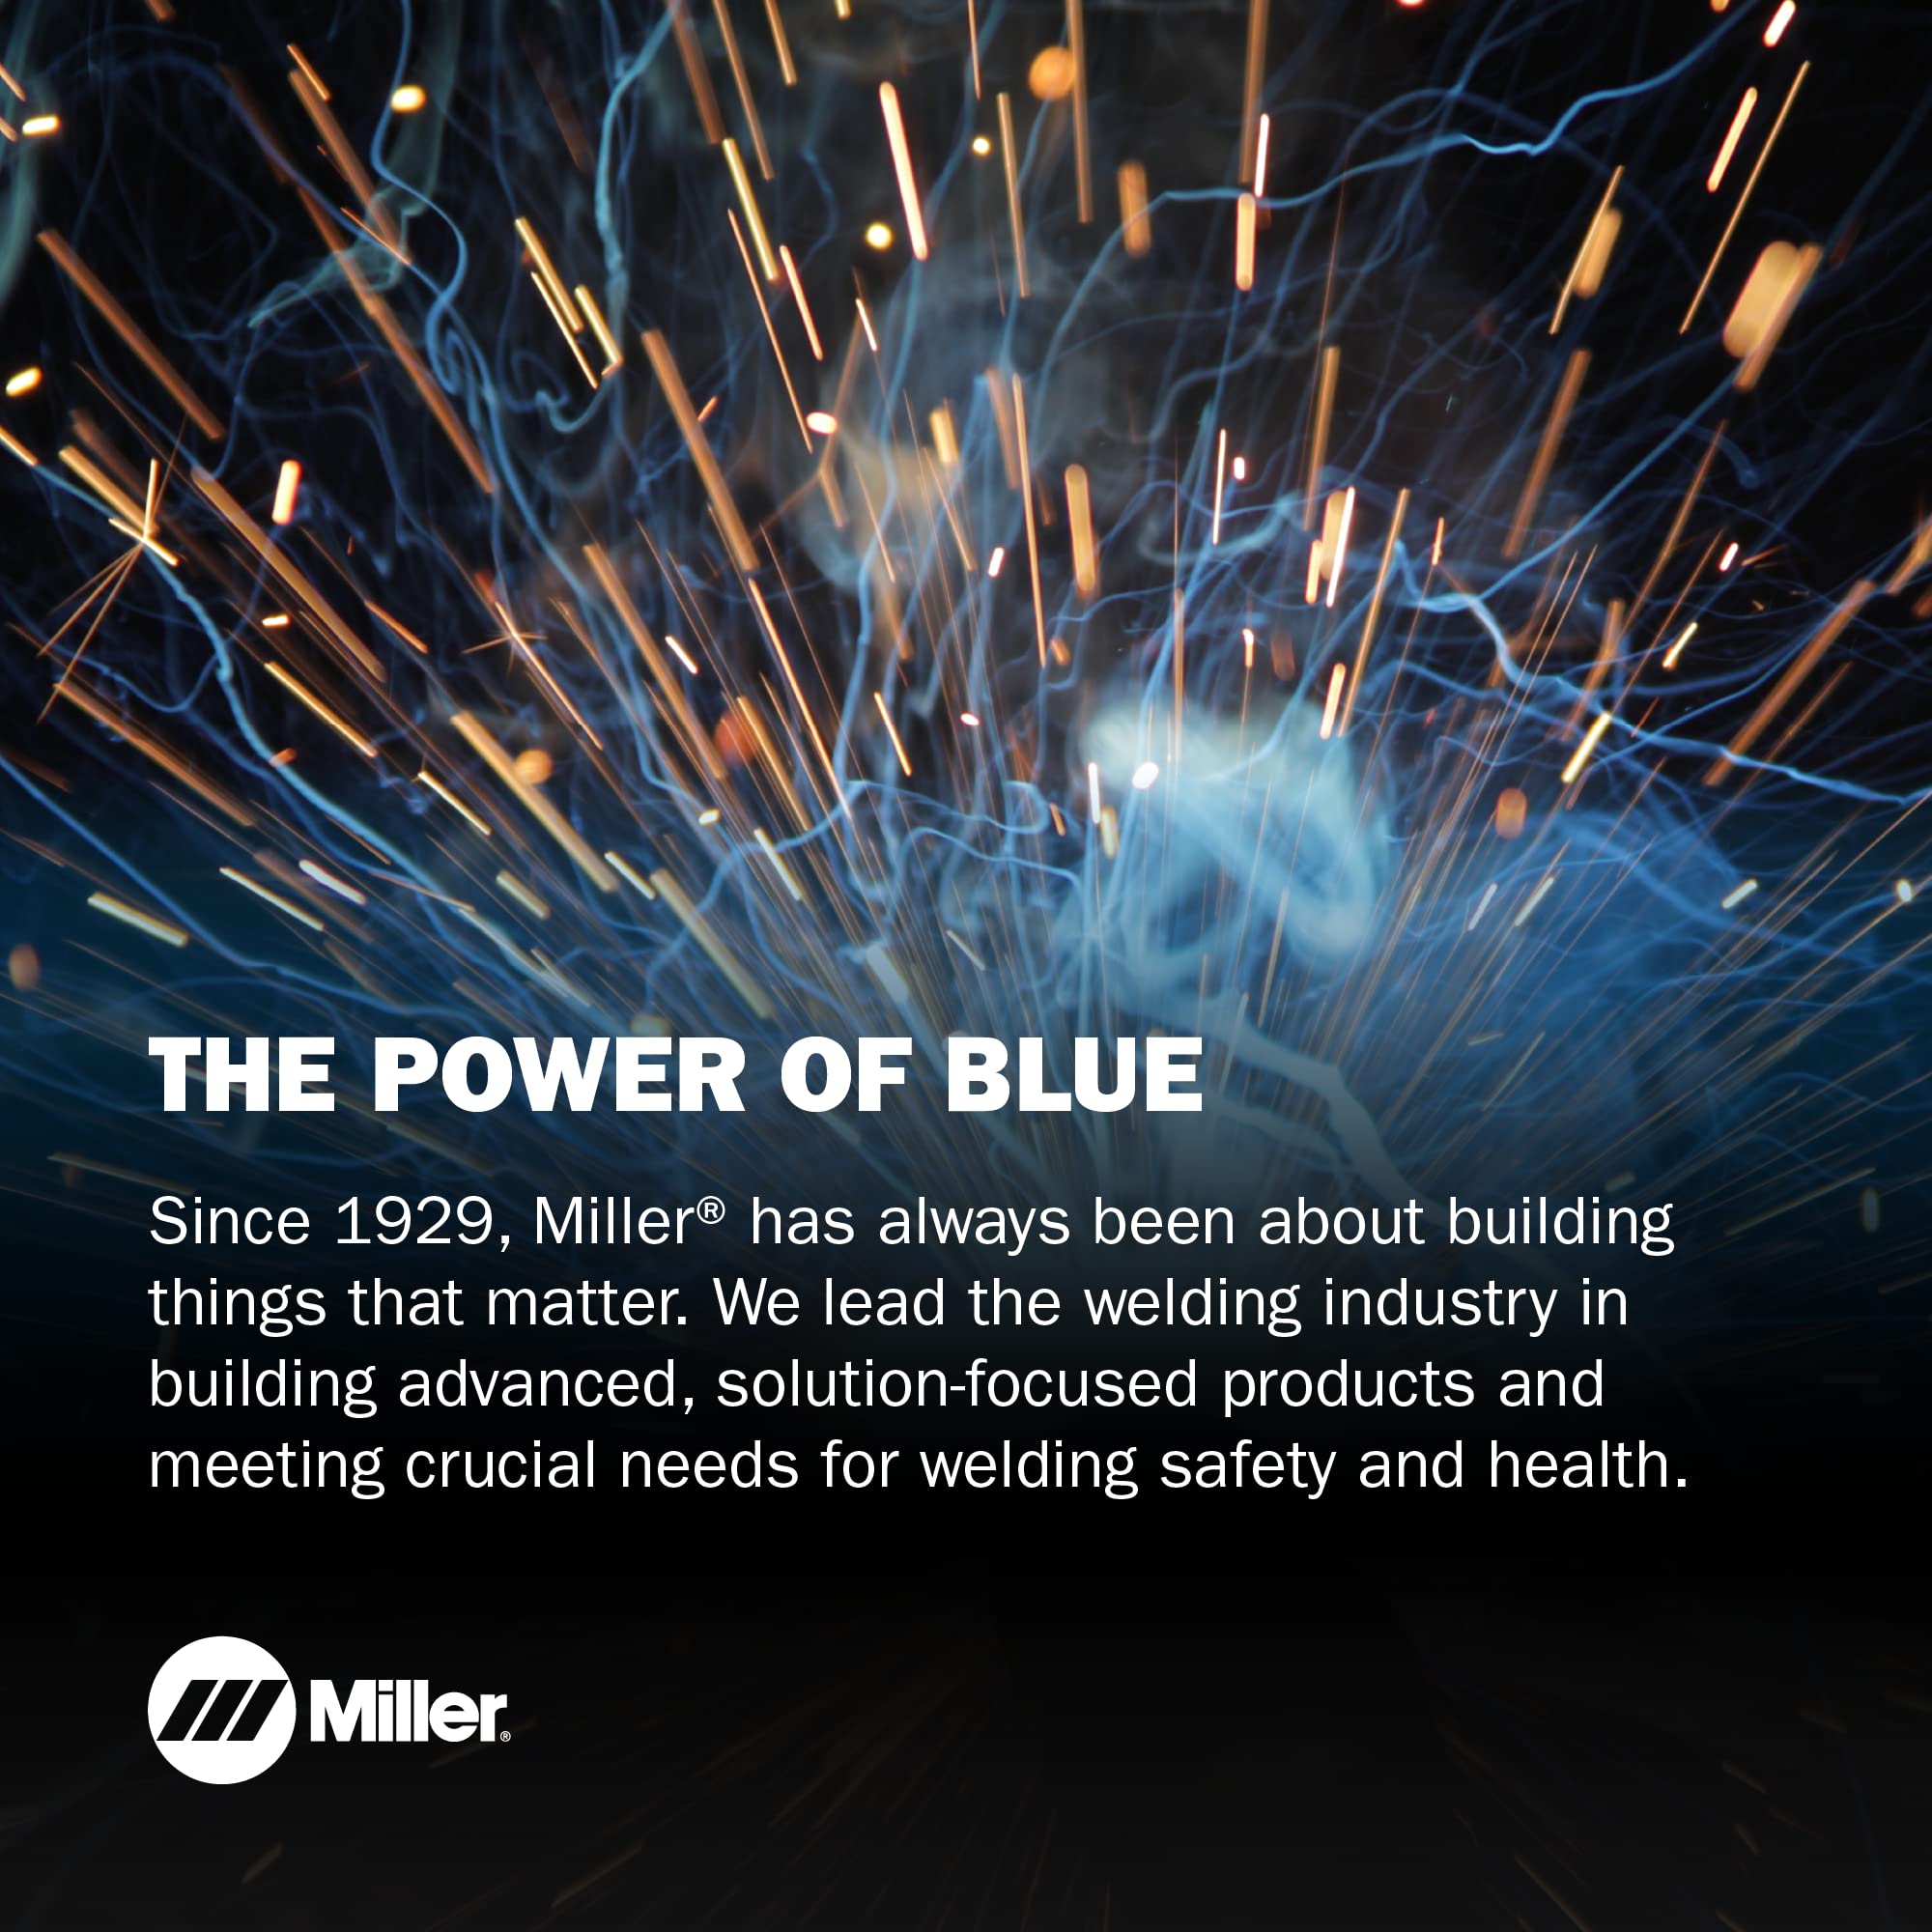 Miller 245230 CoolBelt Welding-Helmet Cooling System, Black